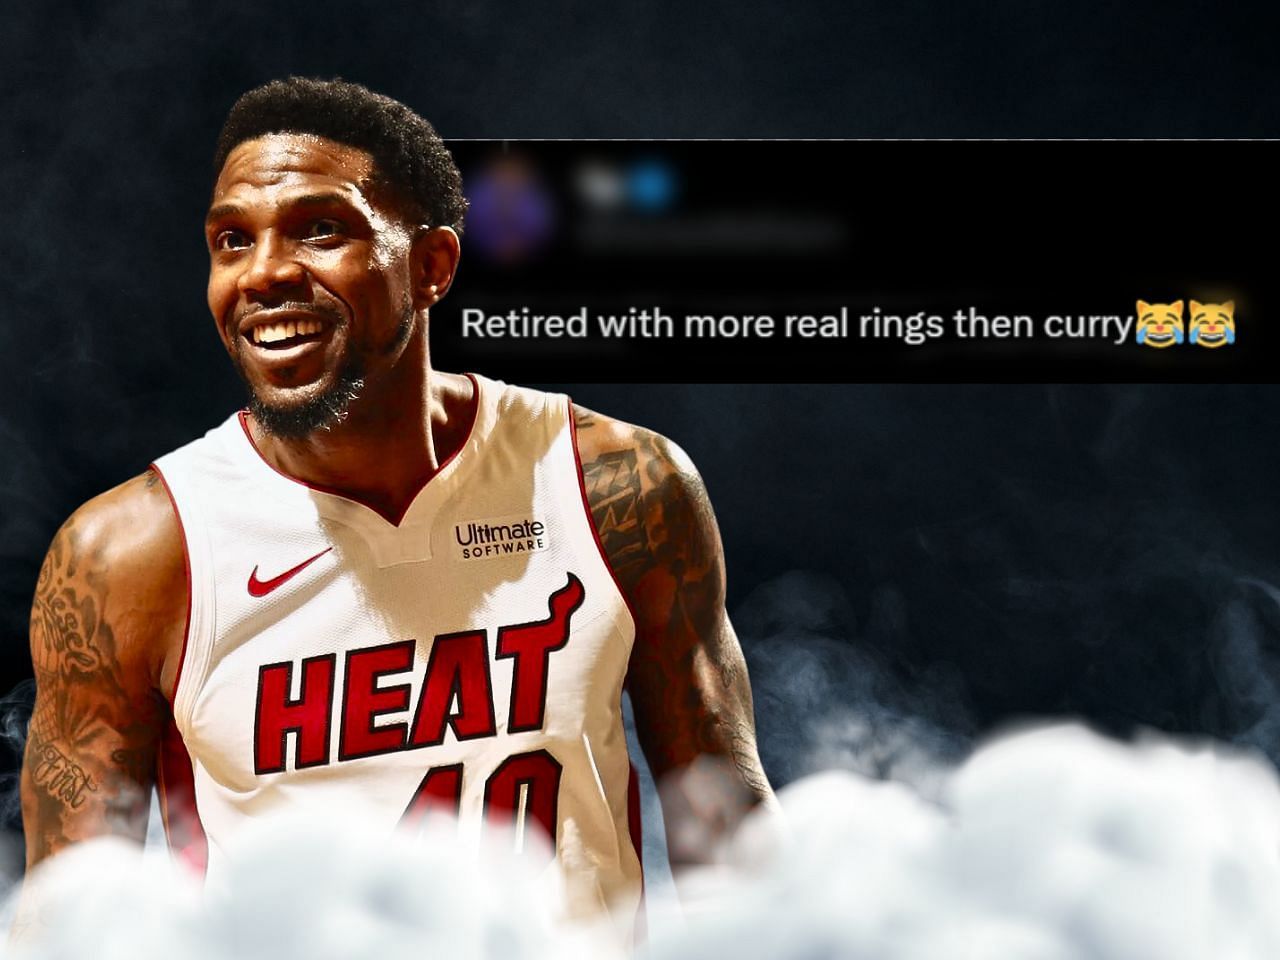 The Miami Heat retire MJ's jersey : r/nba